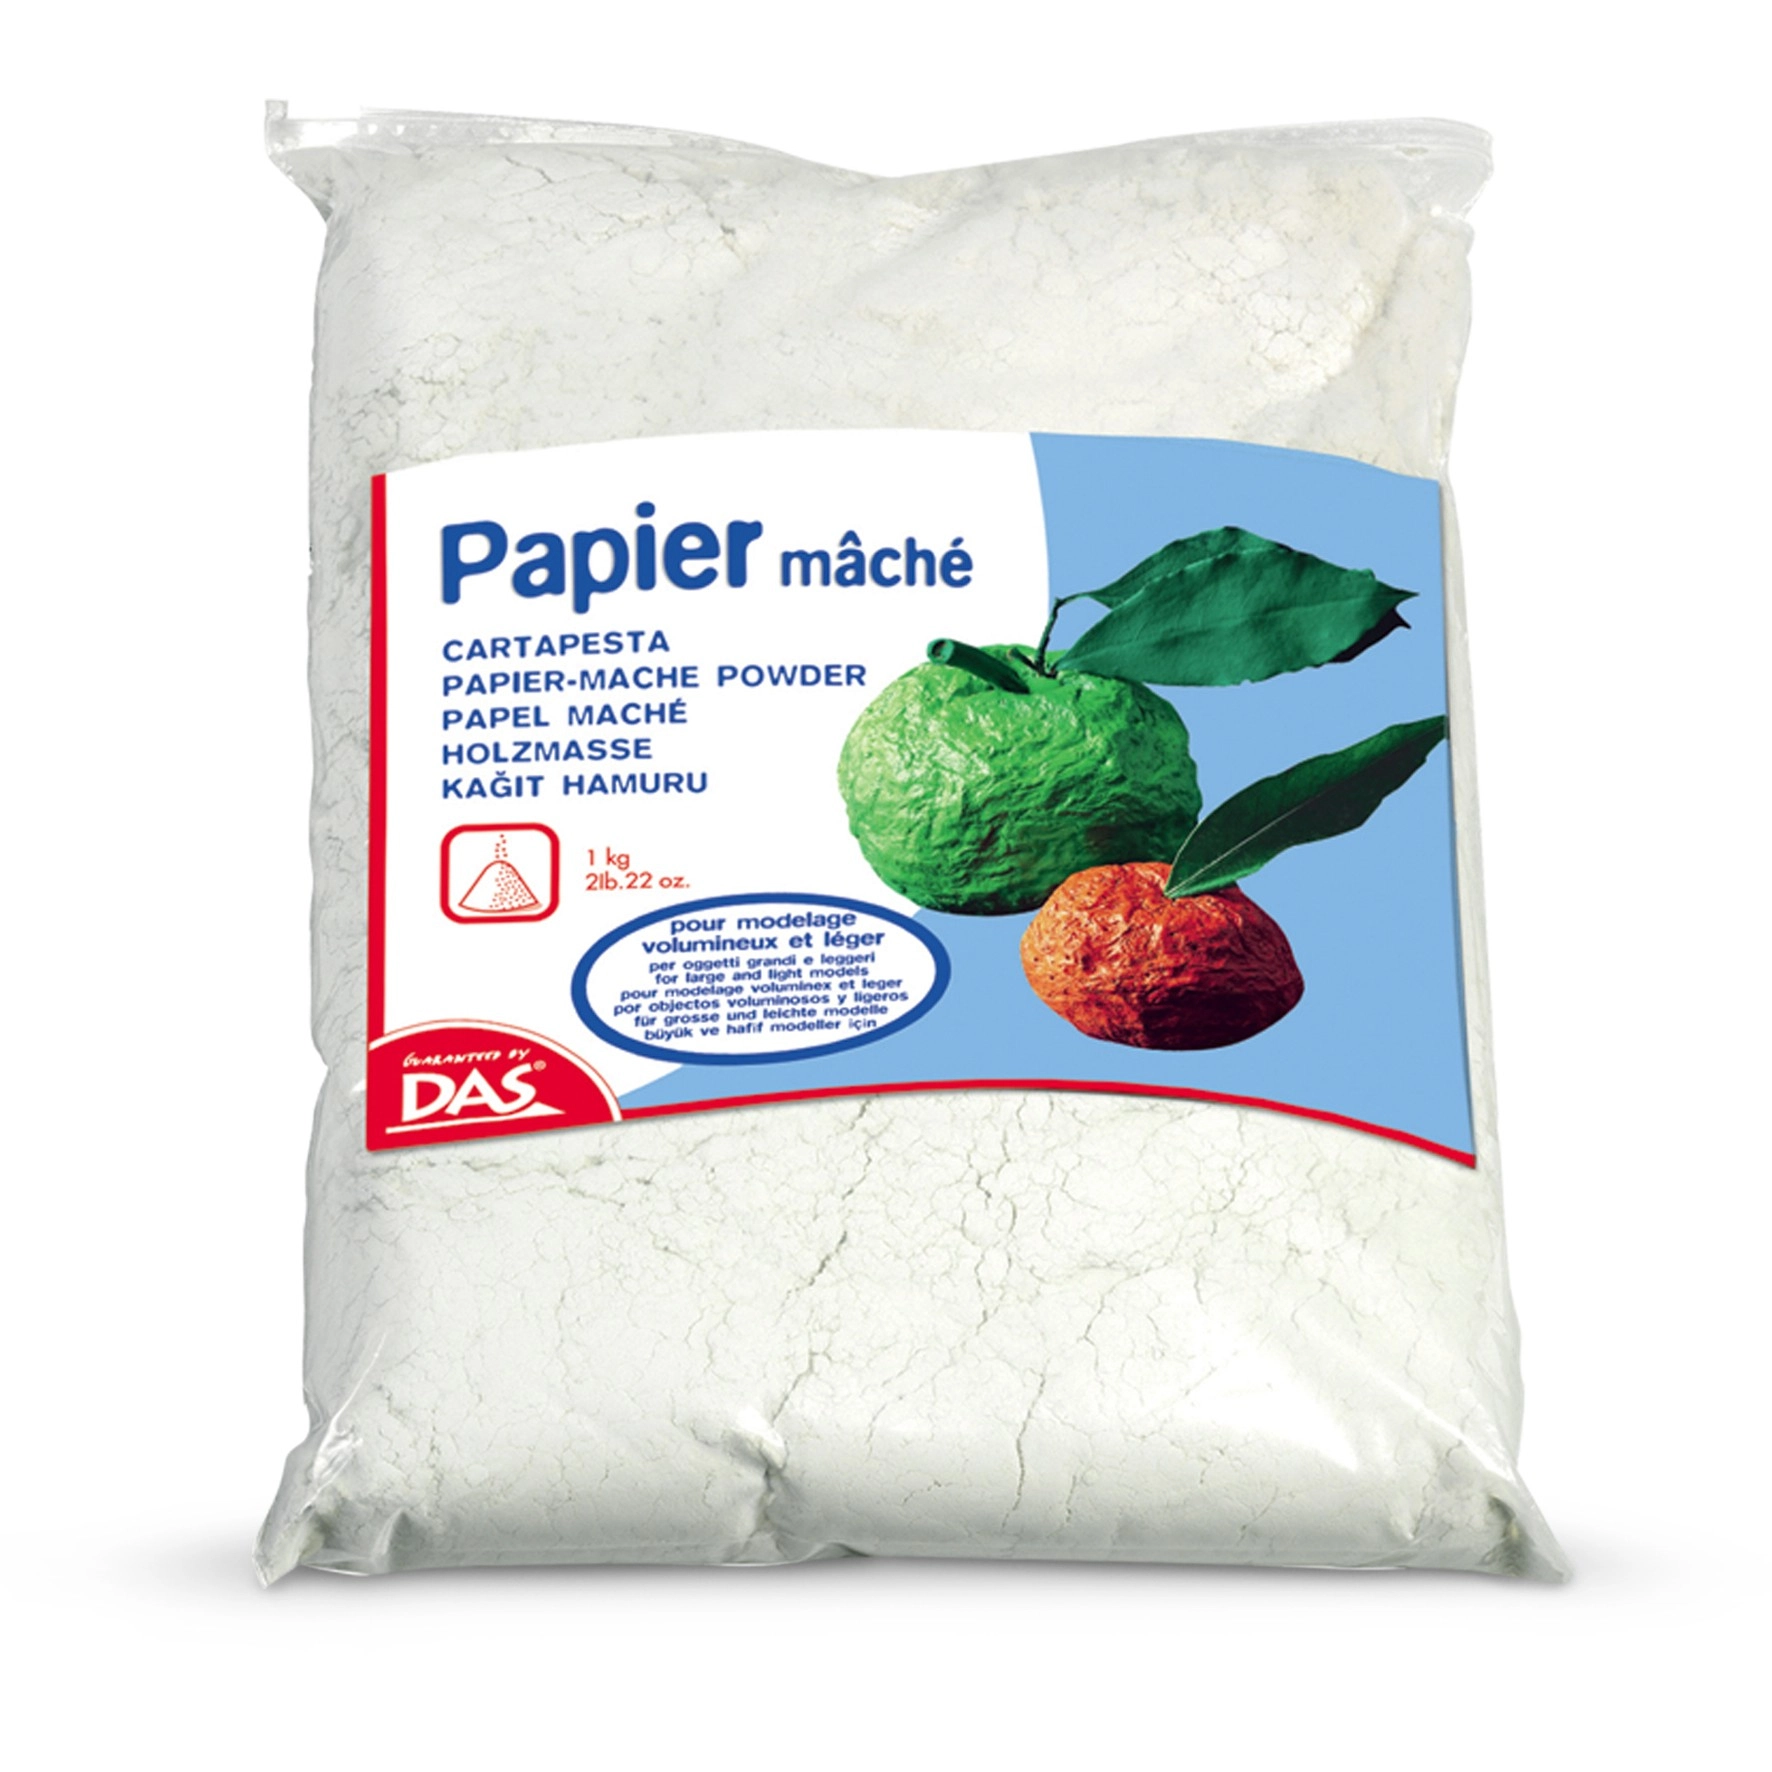 DAS Papier-mâché Powder - Fila Deutschland